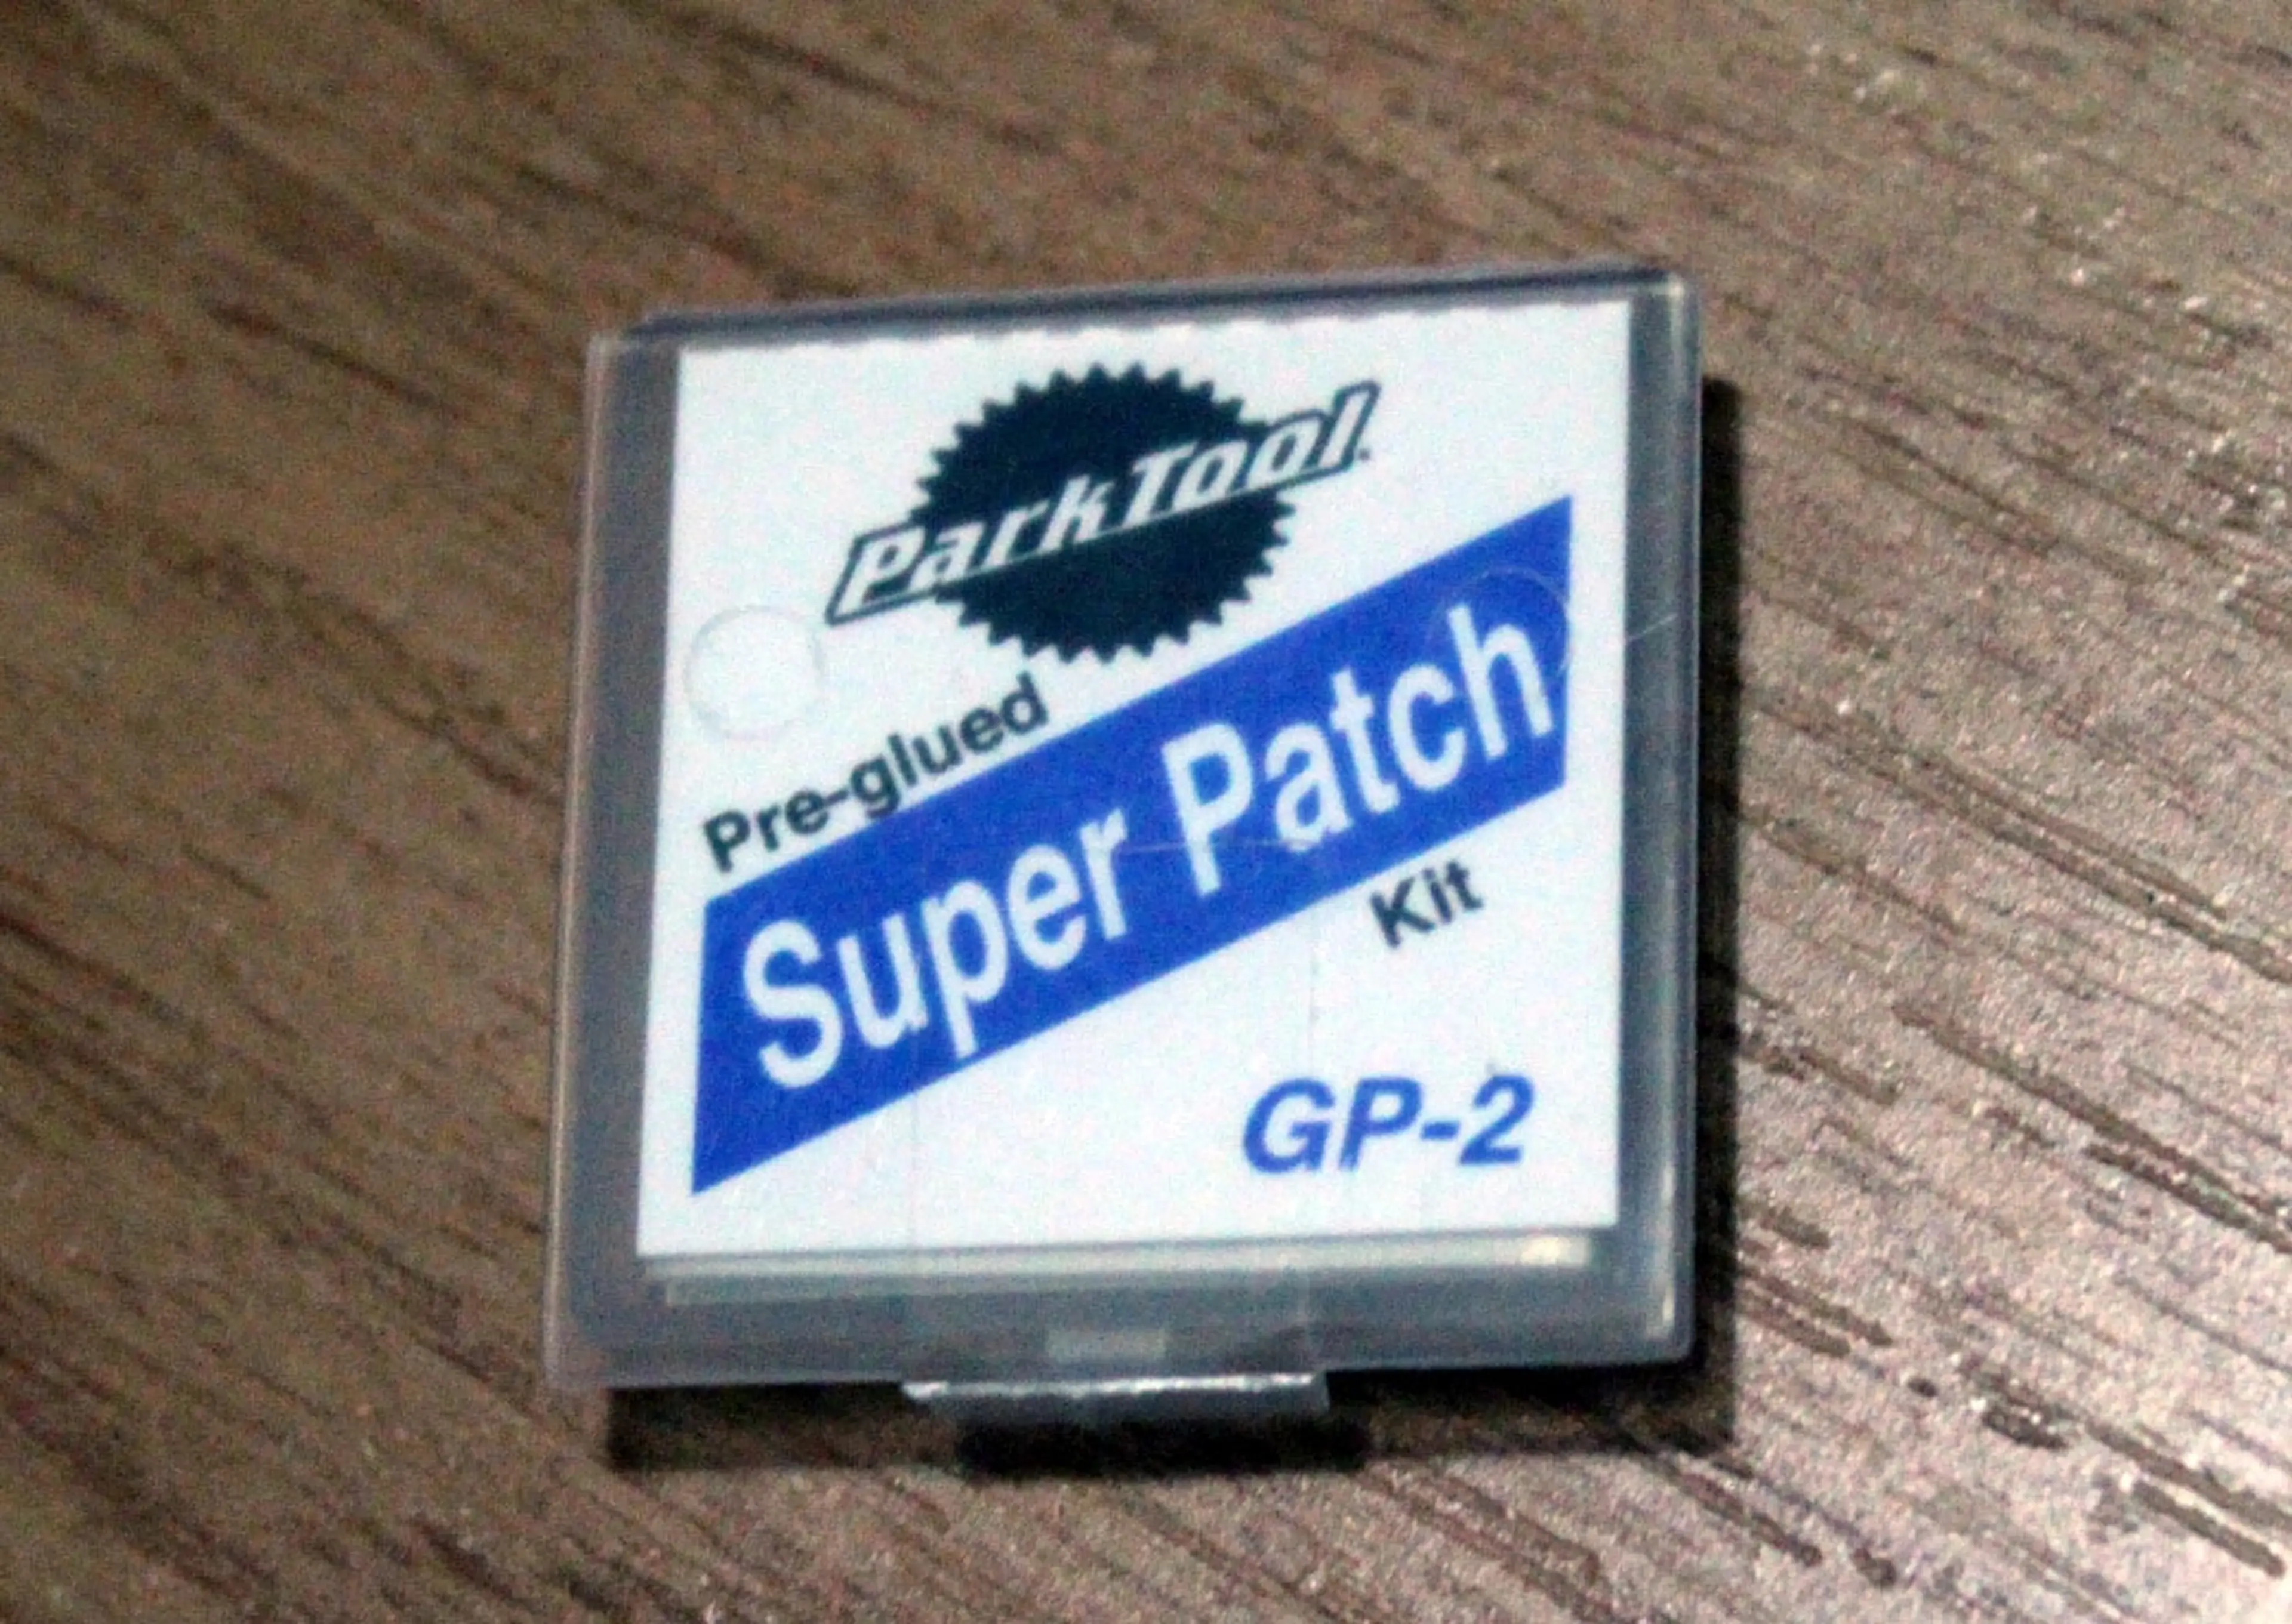 1. Park Tool Super Patch Kit GP-2 petice autoadezive